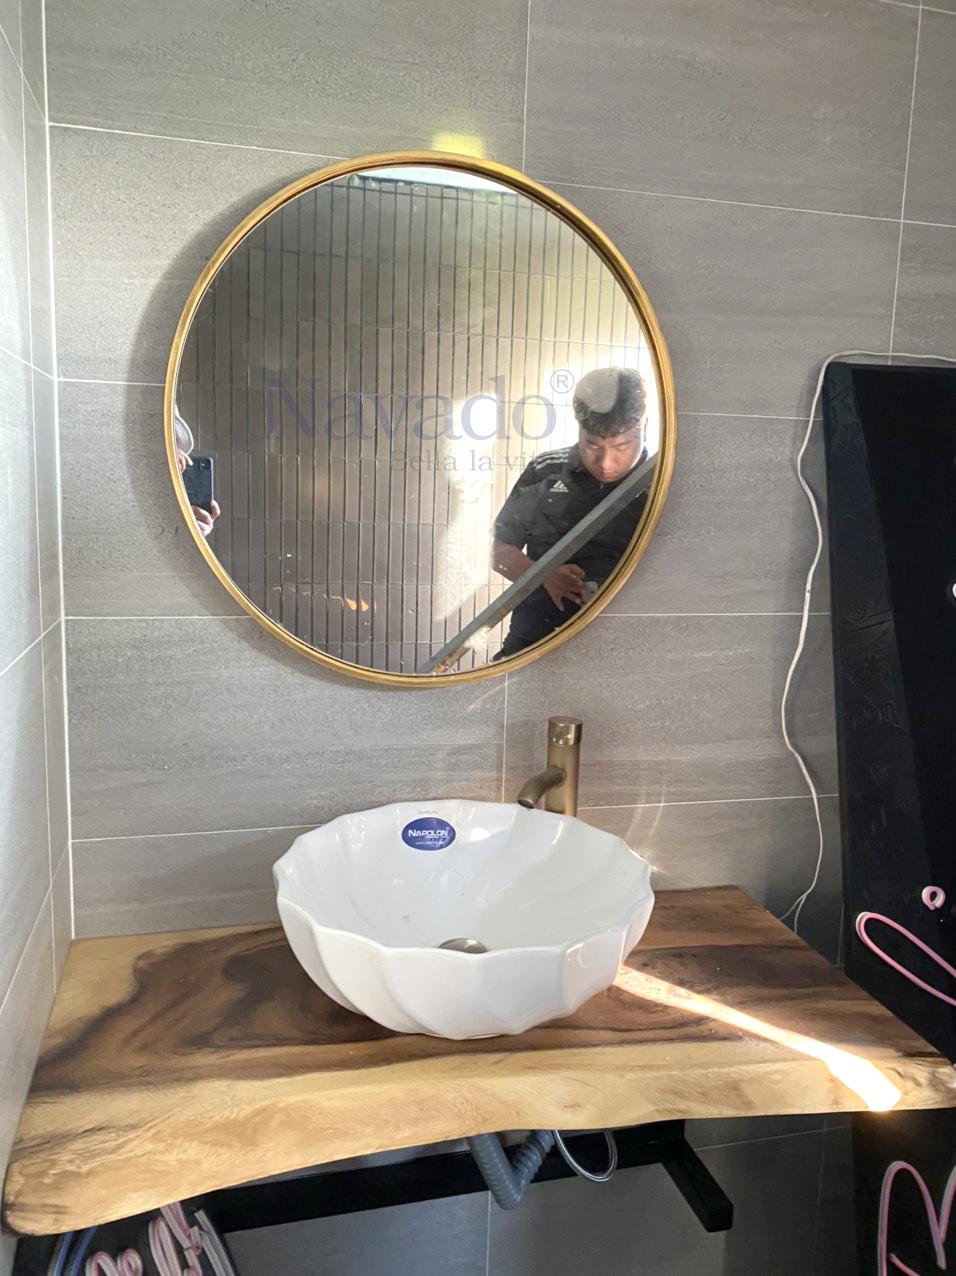 Gương khung vàng treo phòng tắm: Gương khung vàng treo phòng tắm mang đến không gian phòng tắm của bạn sự sang trọng và tinh tế. Với thiết kế khung vàng đổi màu tuyệt đẹp, gương này dễ dàng phù hợp với bất kỳ kiểu thiết kế nào của ngôi nhà. Hãy thêm hình ảnh gương khung vàng treo phòng tắm vào album của bạn để cùng trải nghiệm cảm giác tuyệt vời khi sử dụng sản phẩm này.